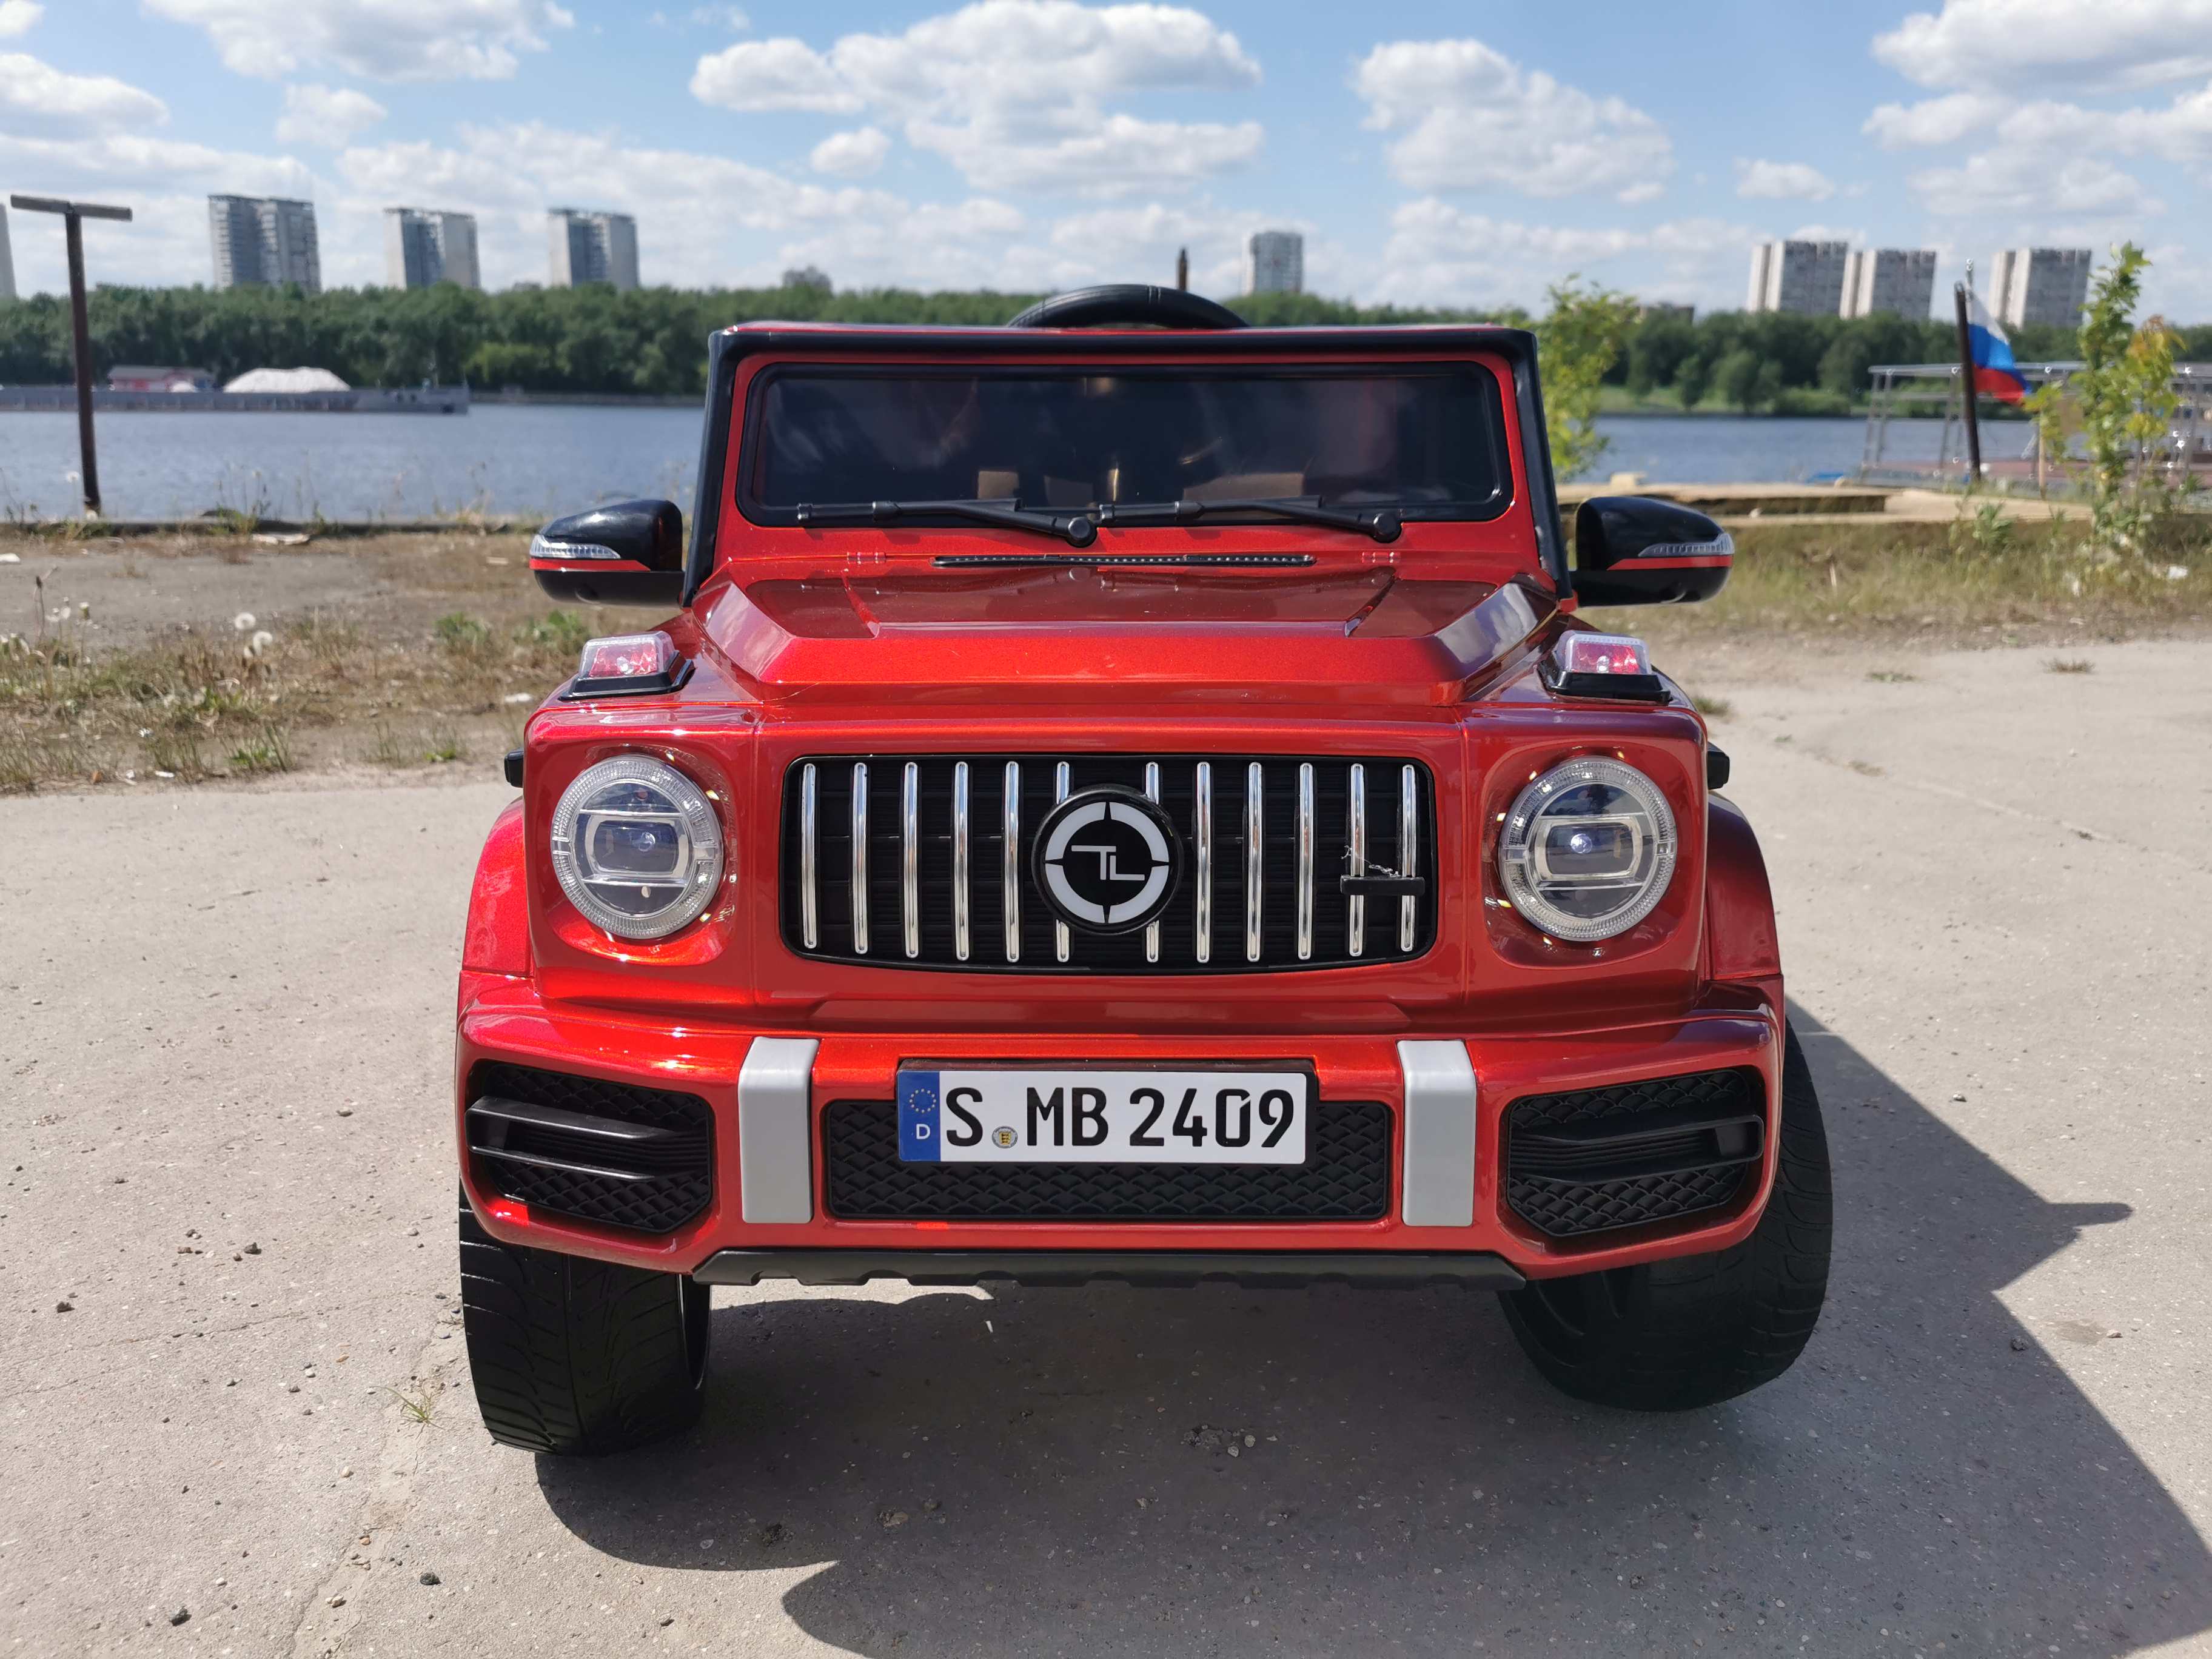 Mercedes-Benz  G63 4х4 (высокая дверь) (Красная краска) YHH2409